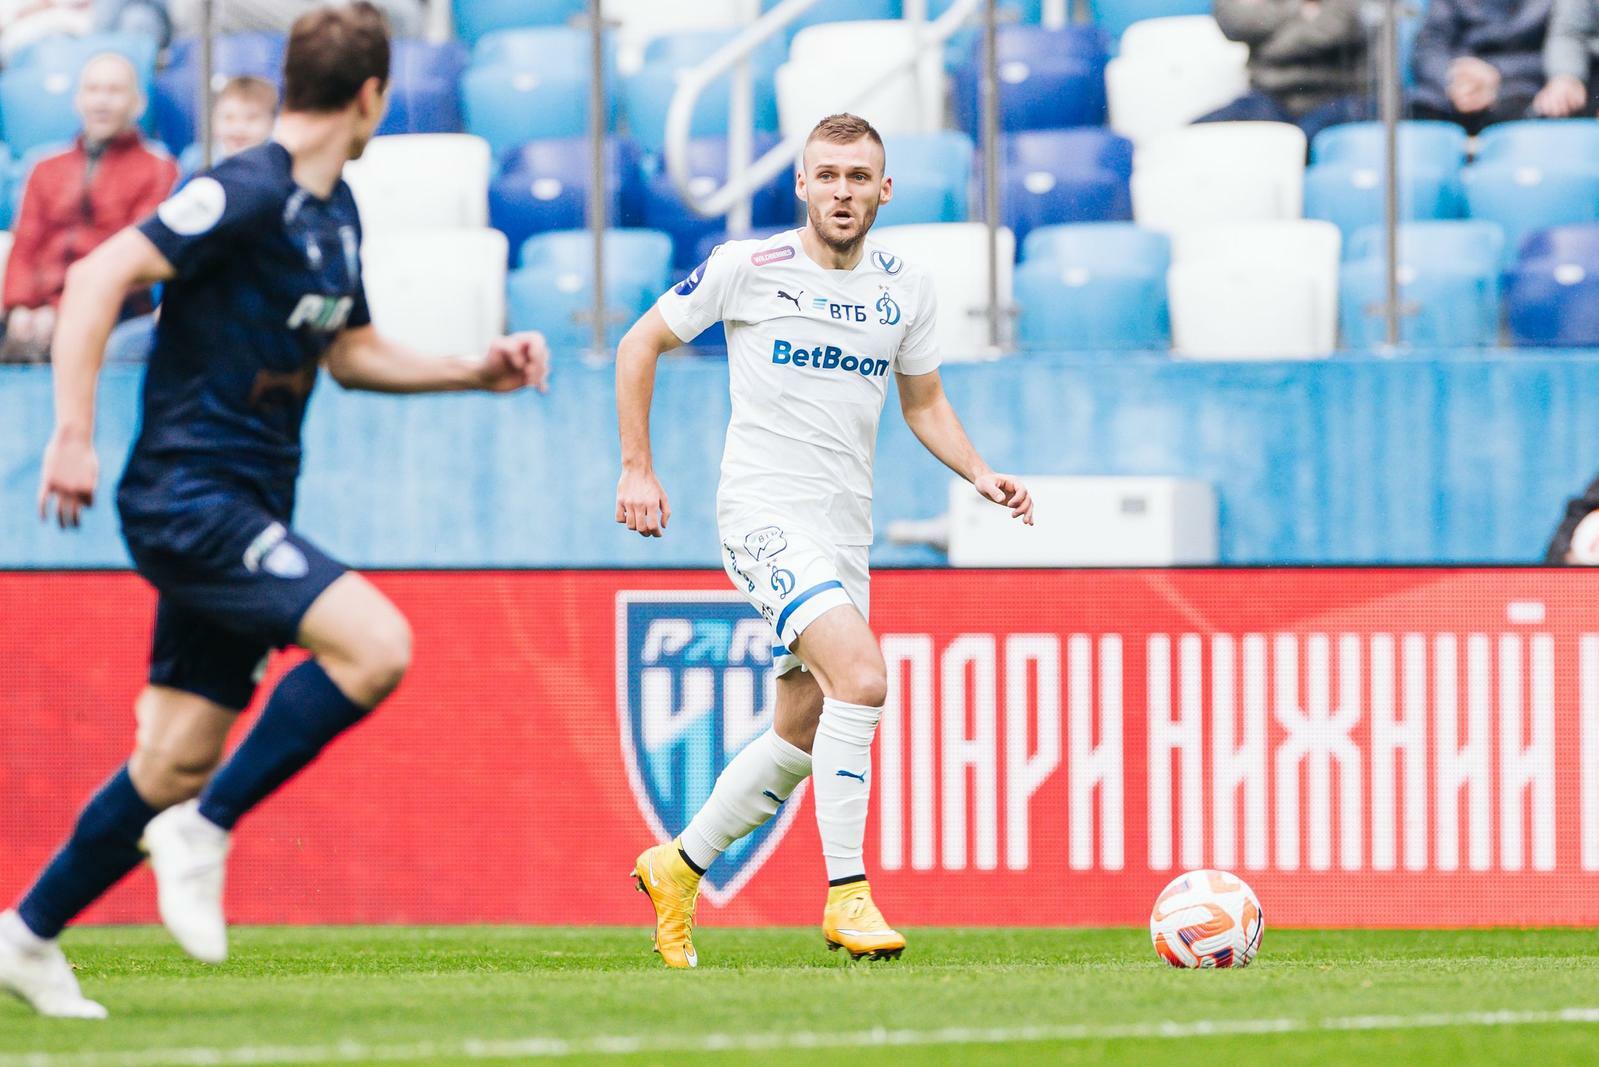 Noticias del FC "Dynamo" Moscú | Dmitri Skopintsev: "Me encantan los grandes partidos, donde hay emoción y pasión en el campo". Sitio oficial del club Dynamo.